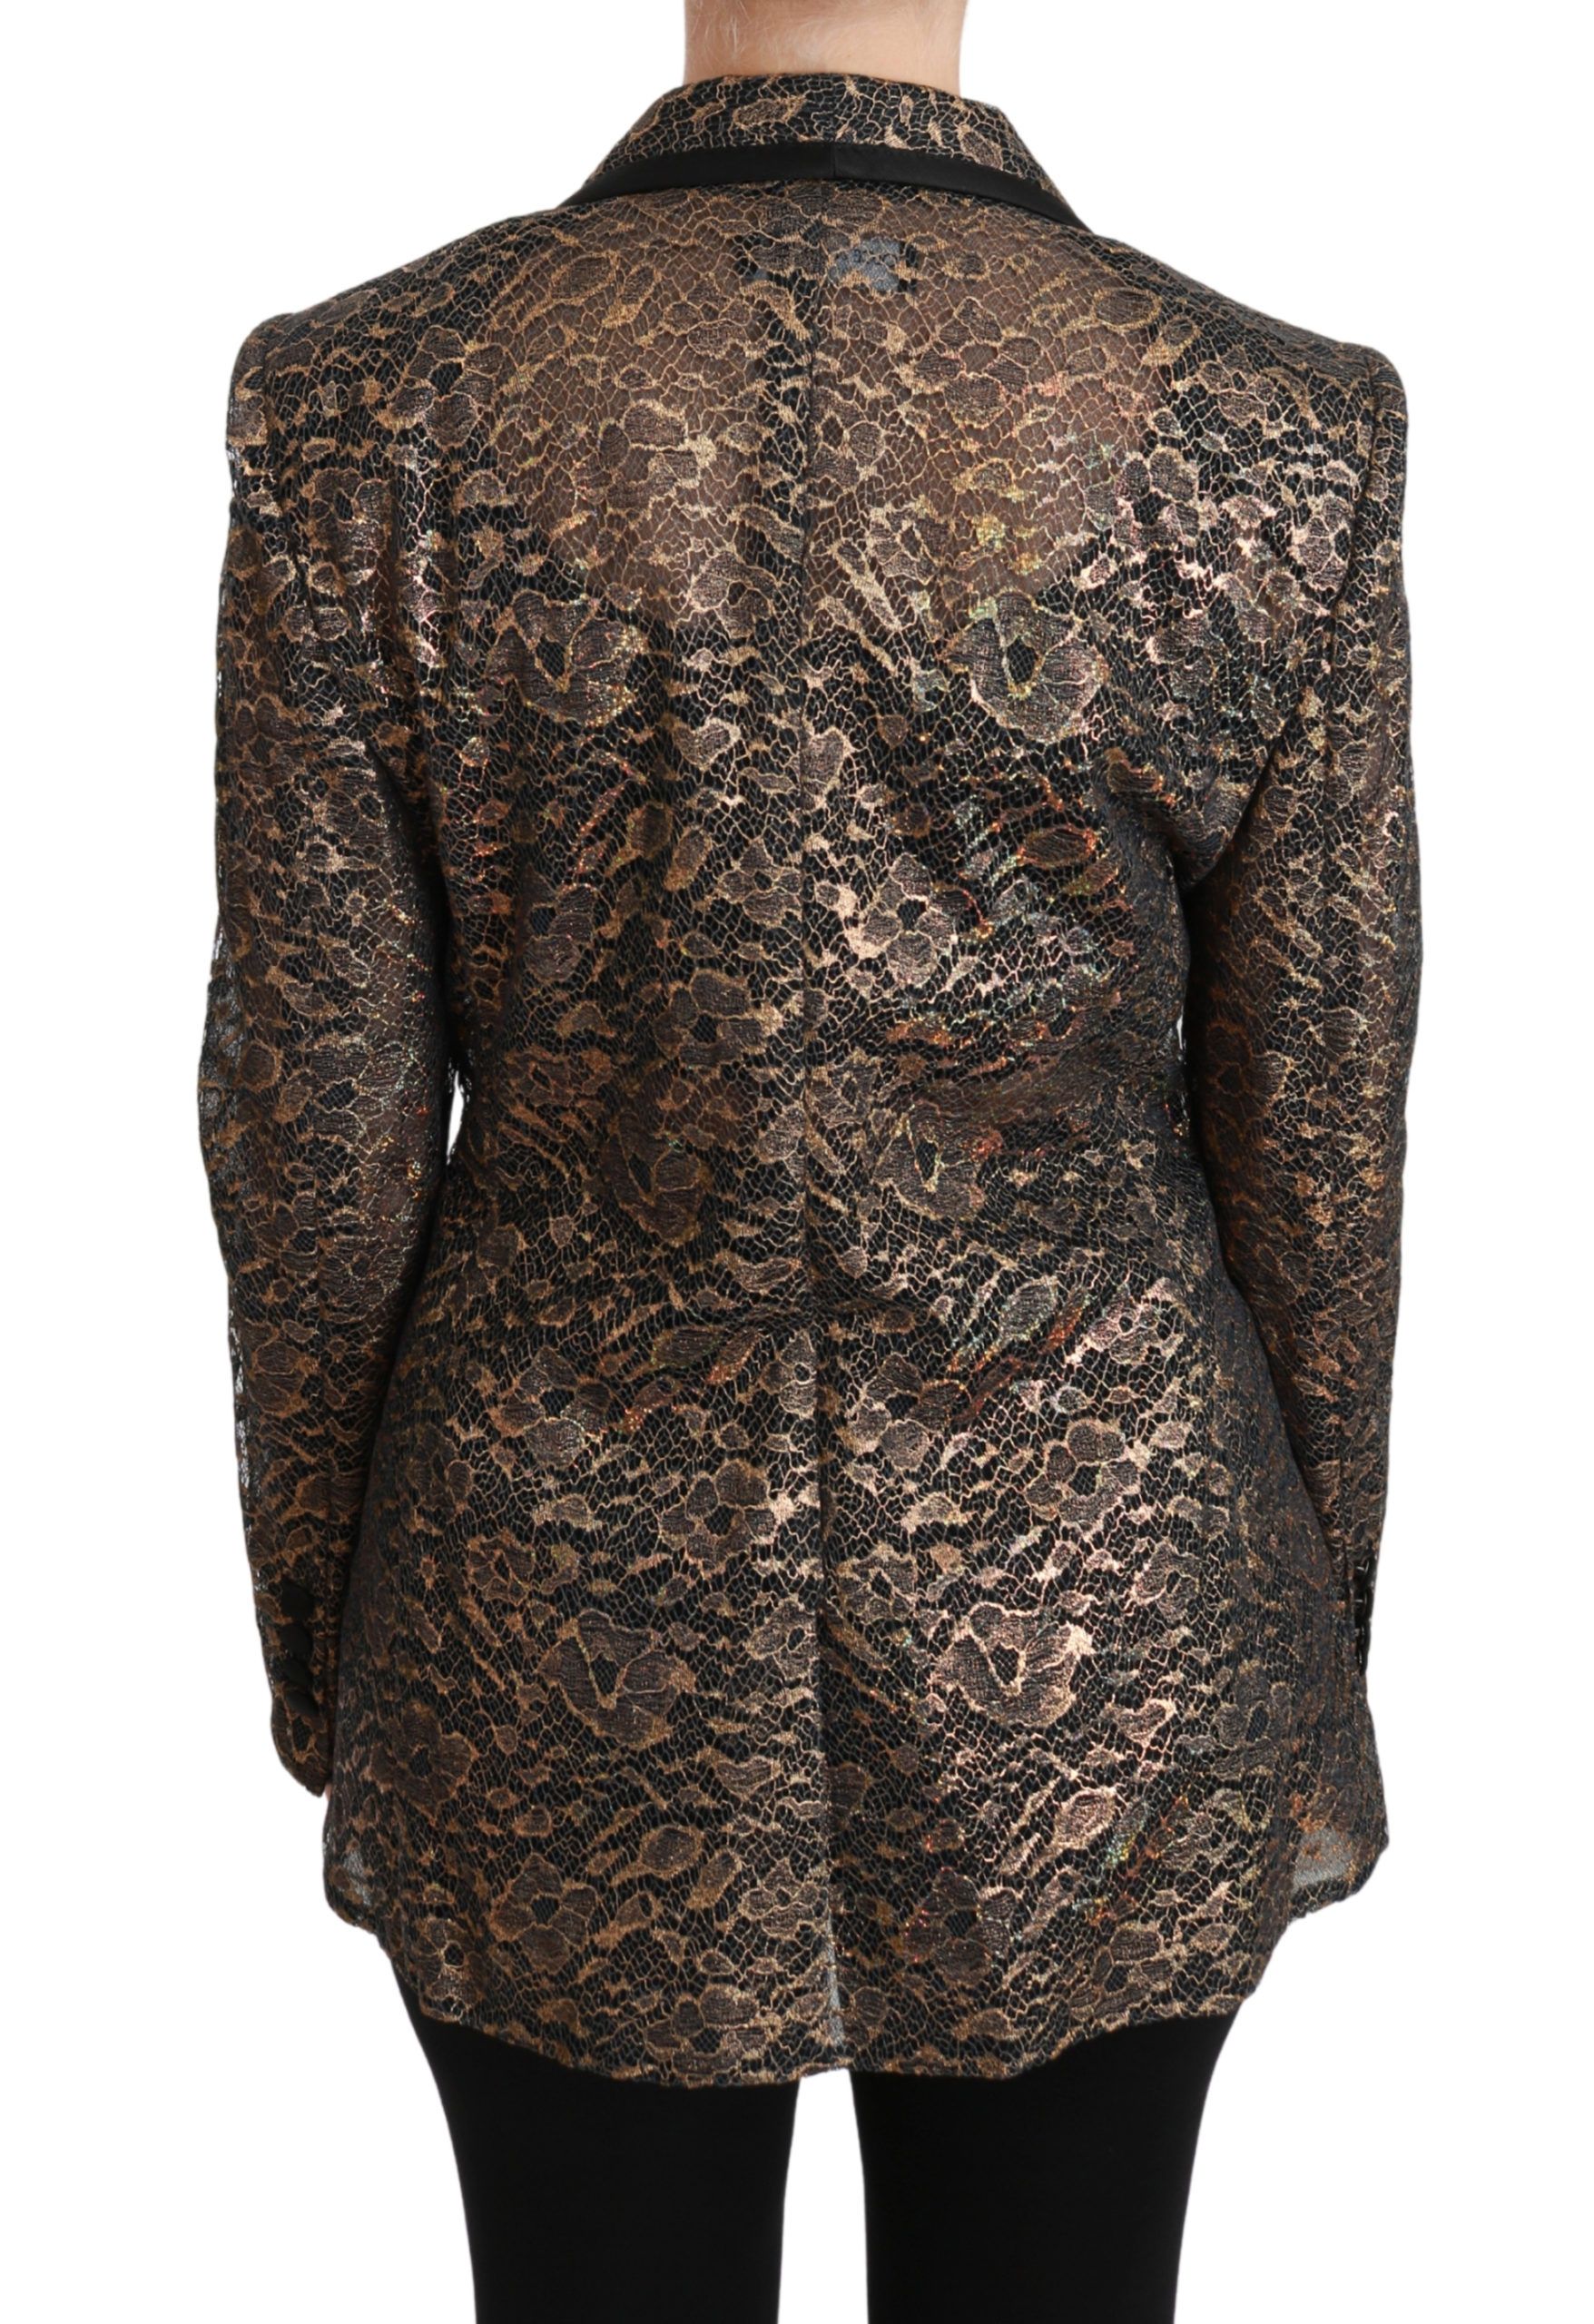 Black Floral Lace Blazer Coat